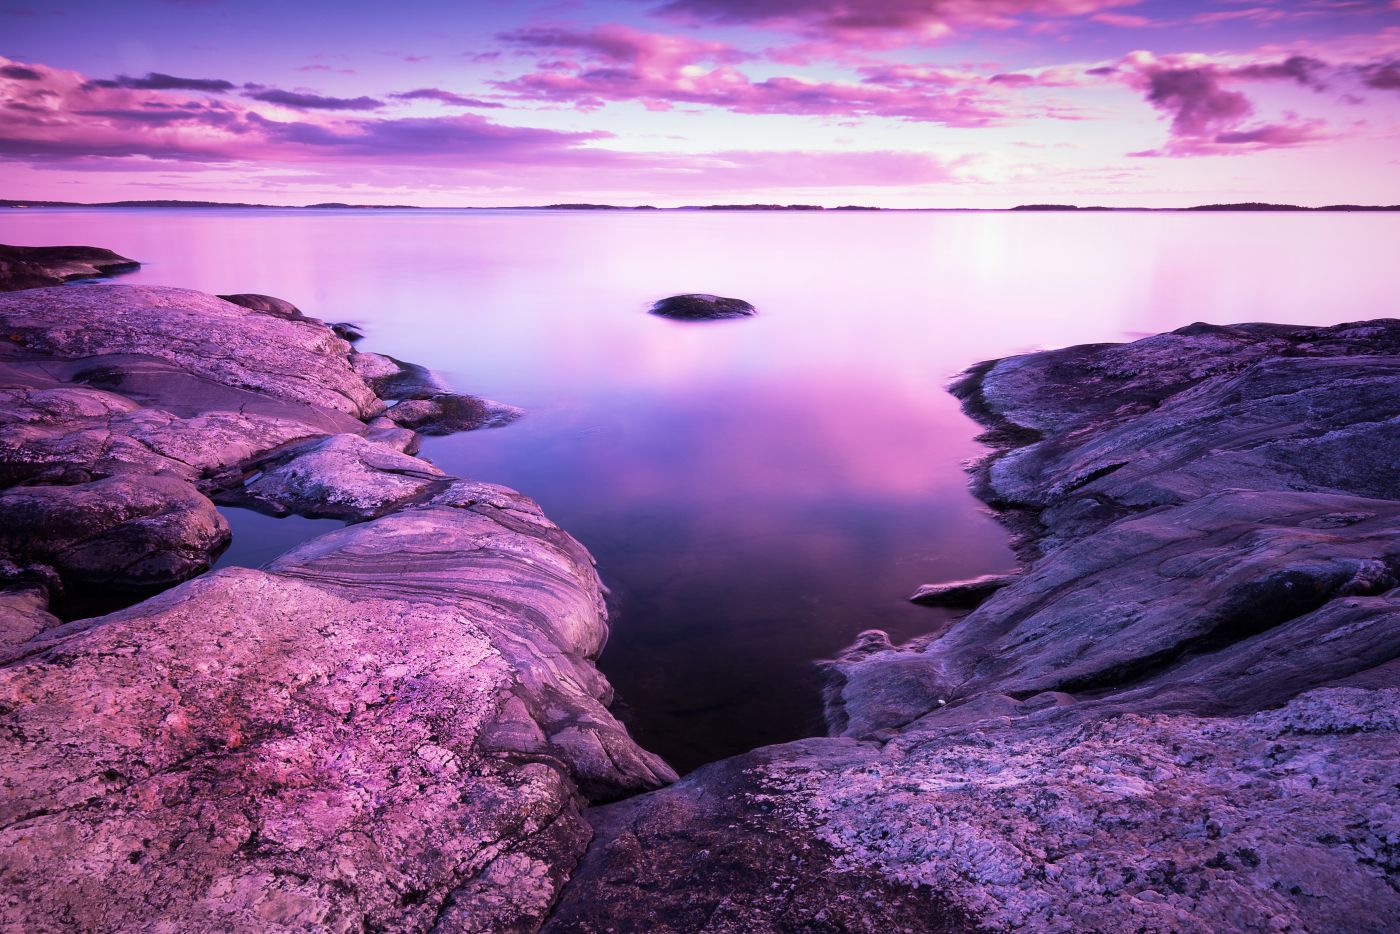 高清晰紫湖美景壁纸 欧莱凯设计网 08php Com